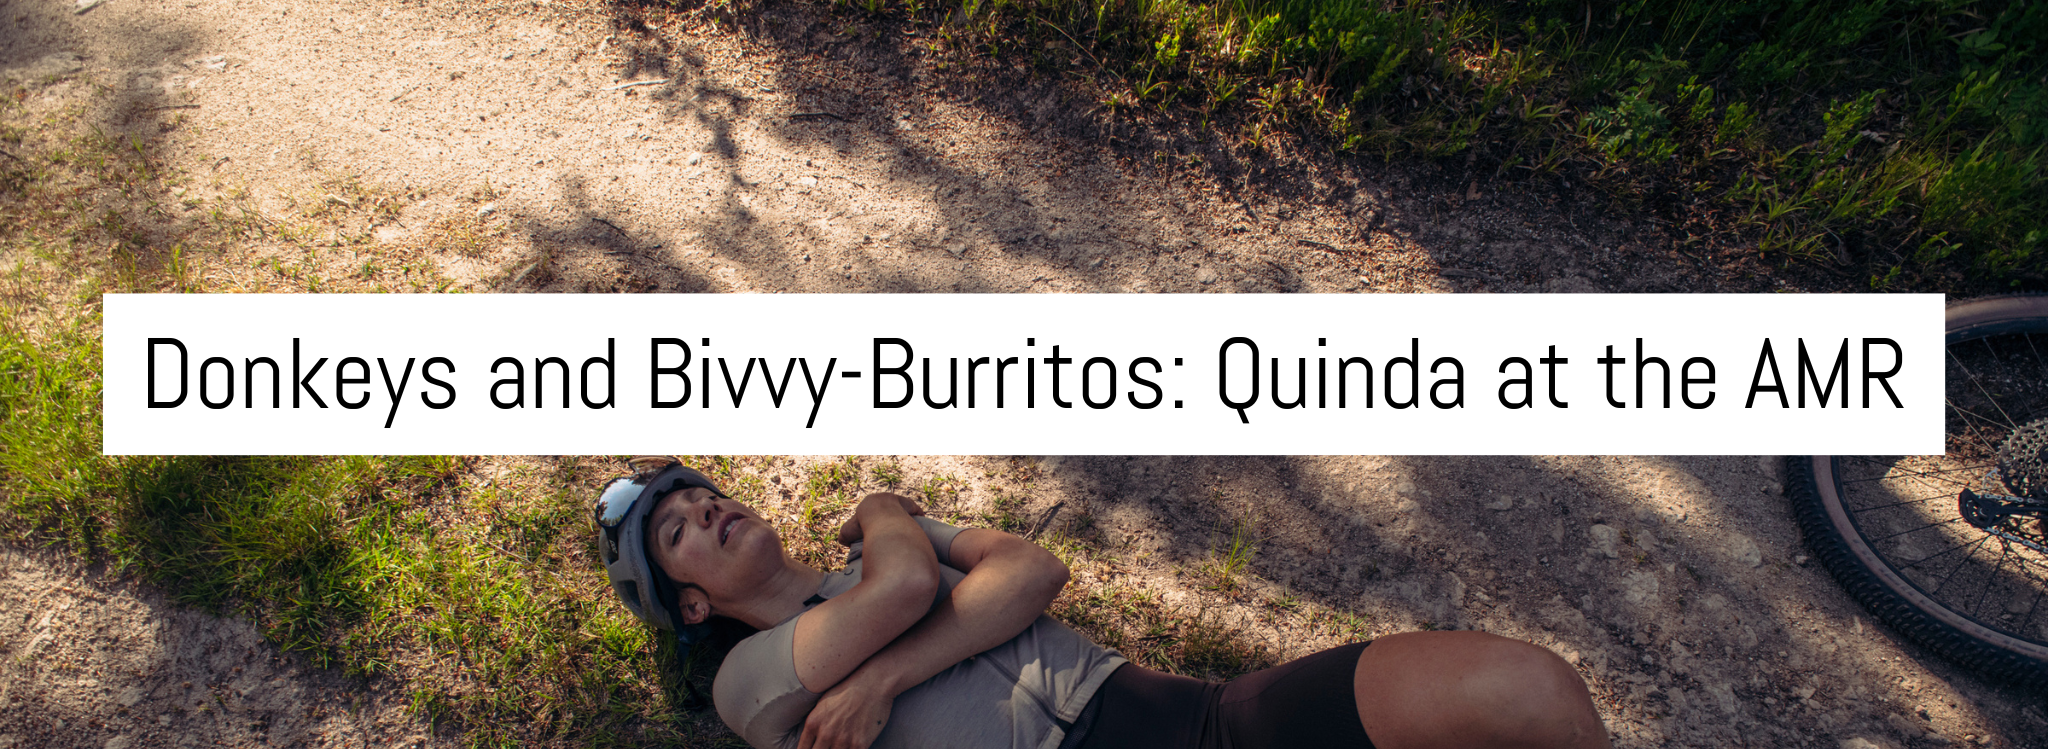 Donkeys and Bivvy-Burritos: Quinda at the AMR